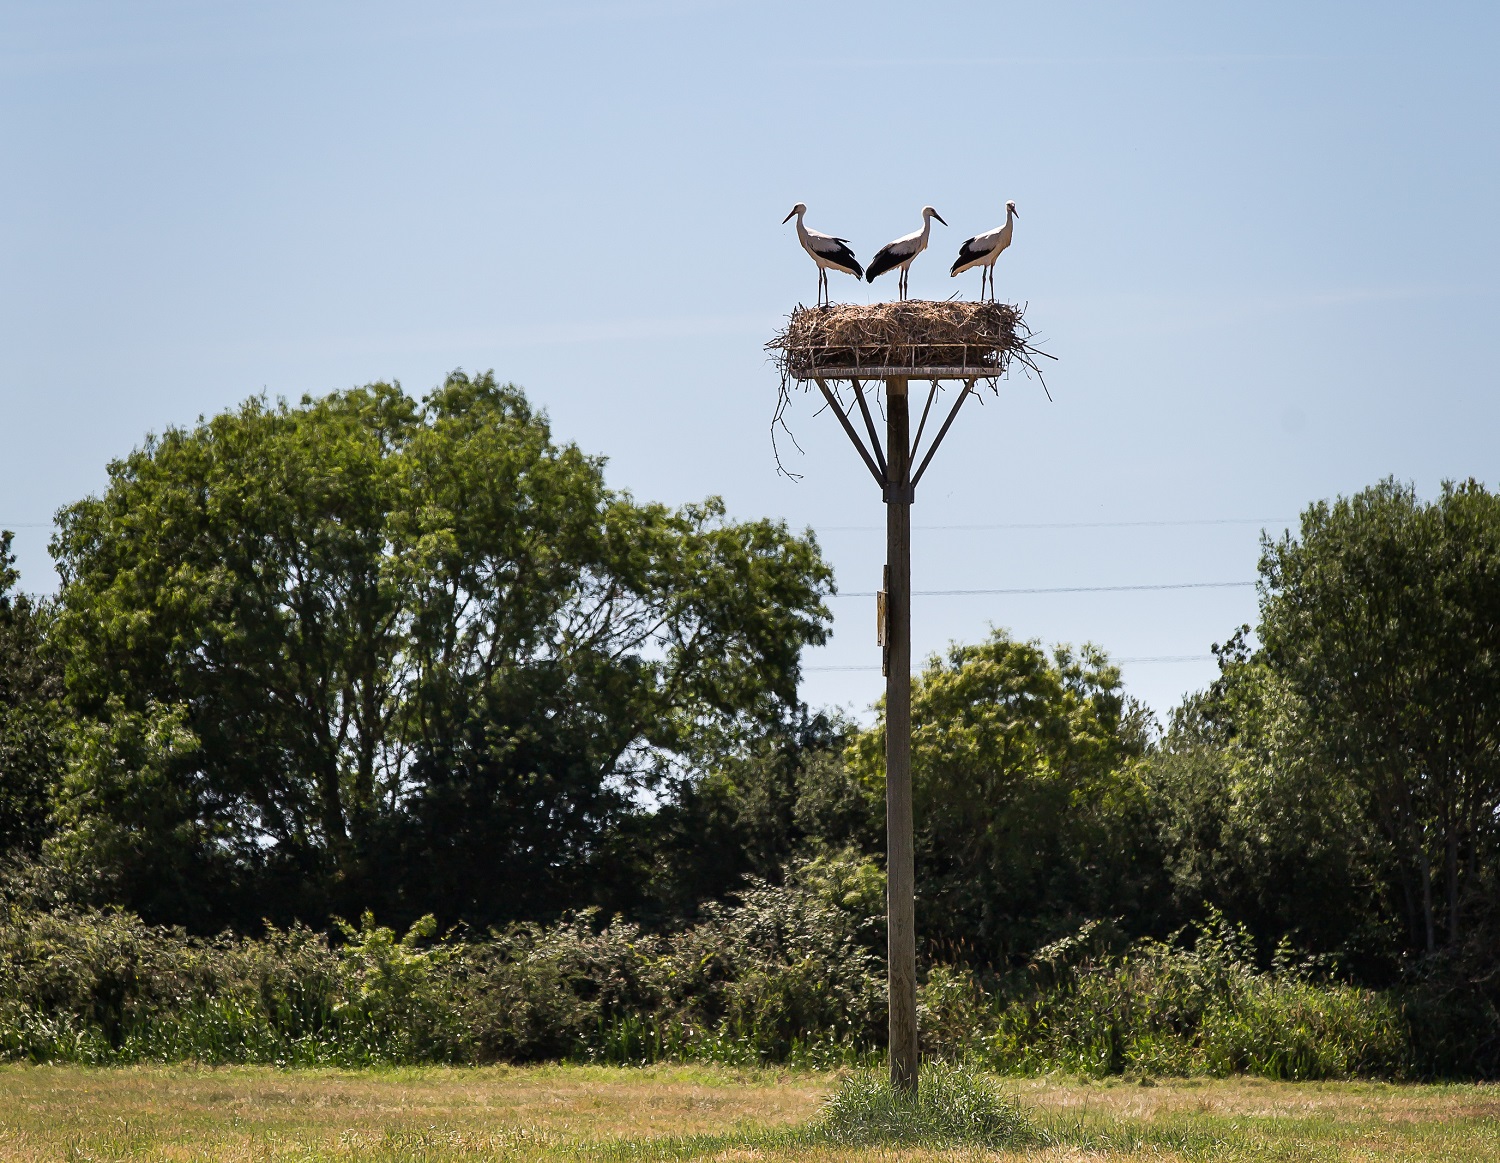 vue nest stork birds migration nature tree - © Mélanie Chaigneau